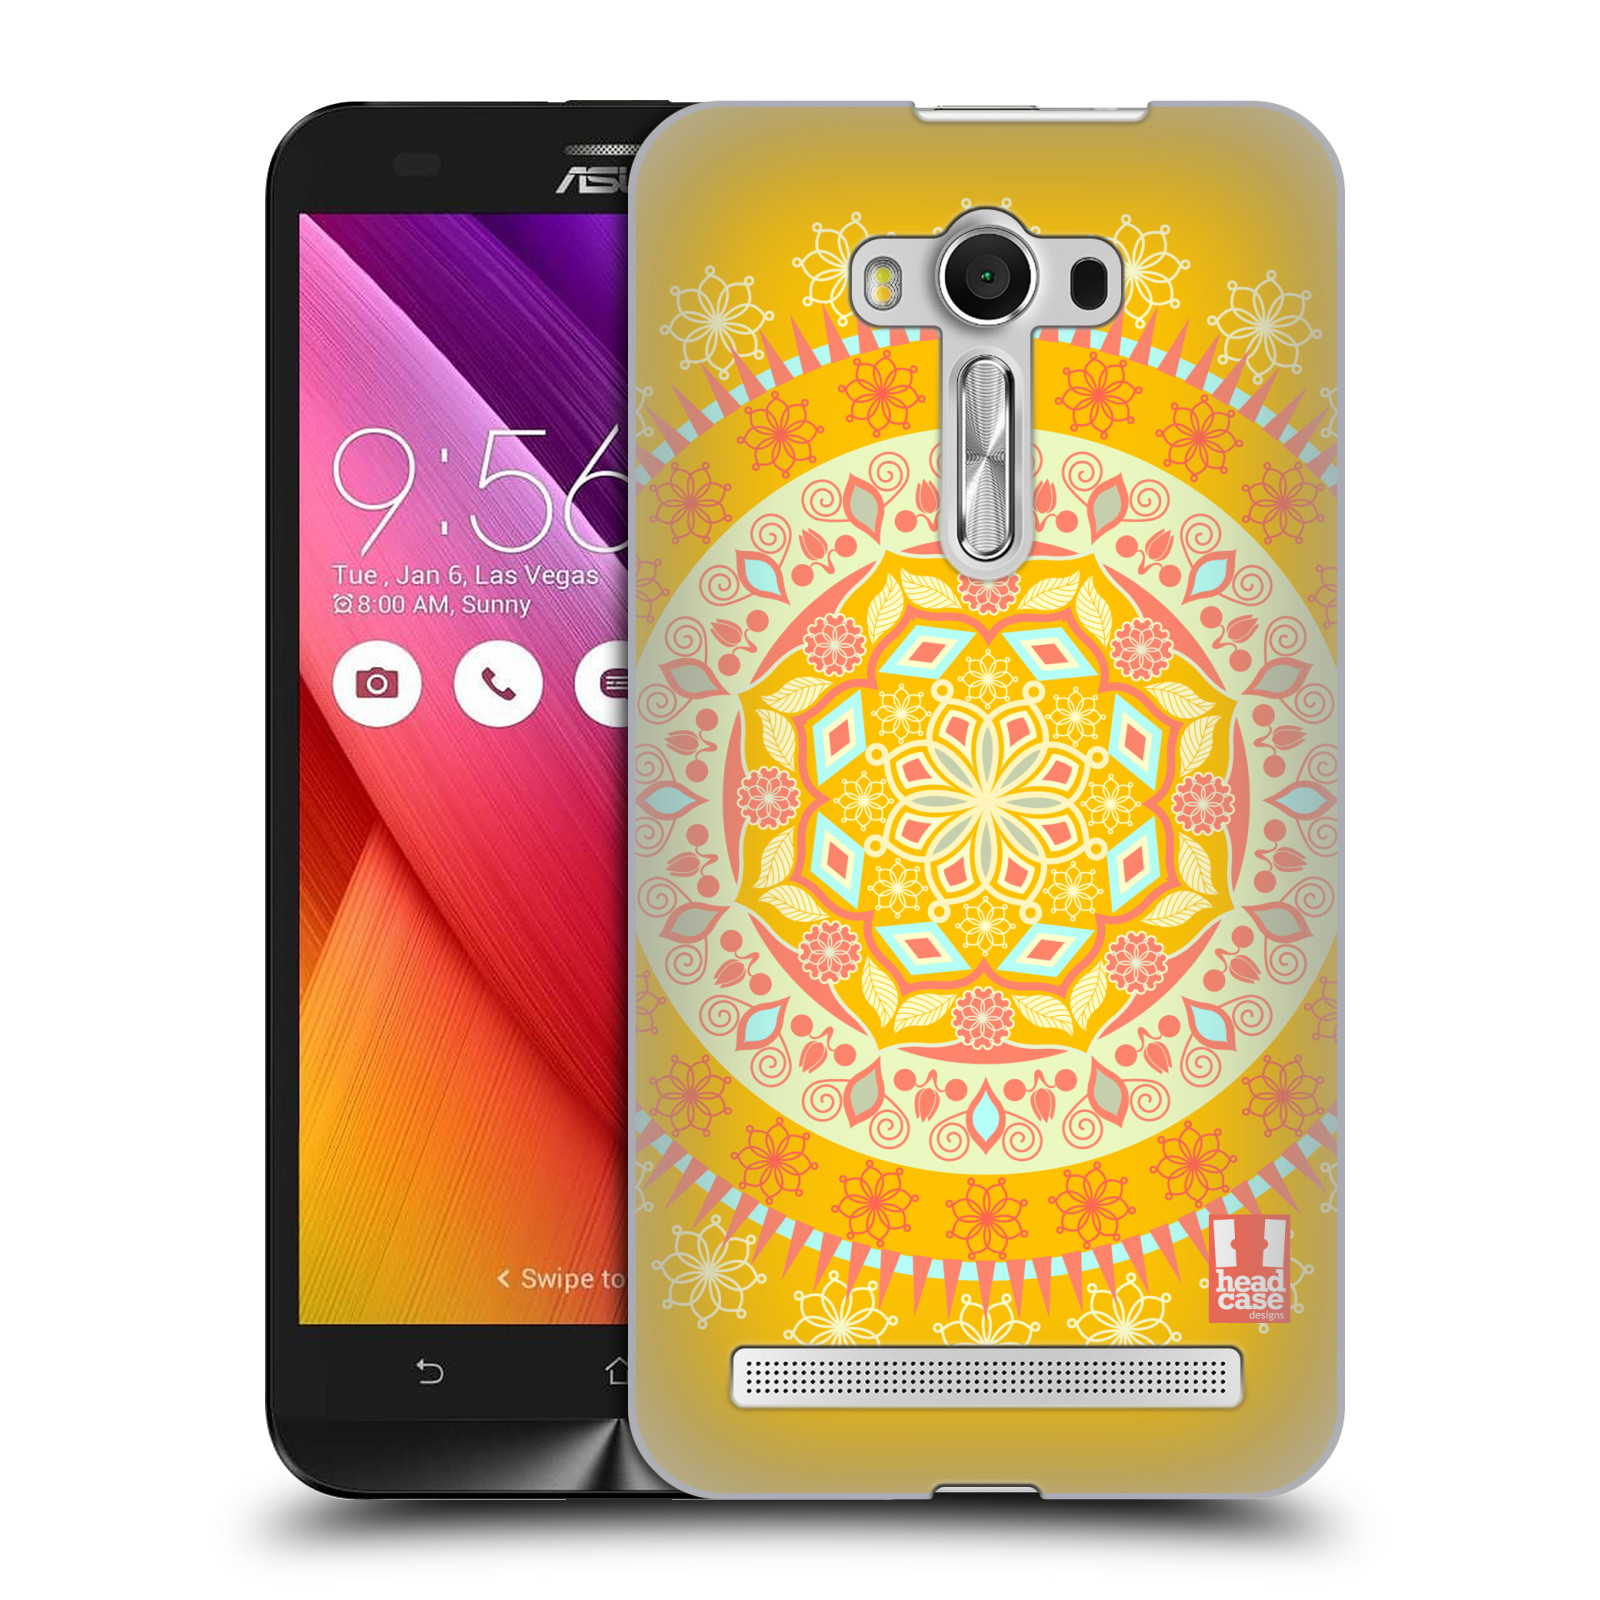 HEAD CASE plastový obal na mobil Asus Zenfone 2 LASER (5,5 displej ZE550KL) vzor Indie Mandala slunce barevný motiv ŽLUTÁ